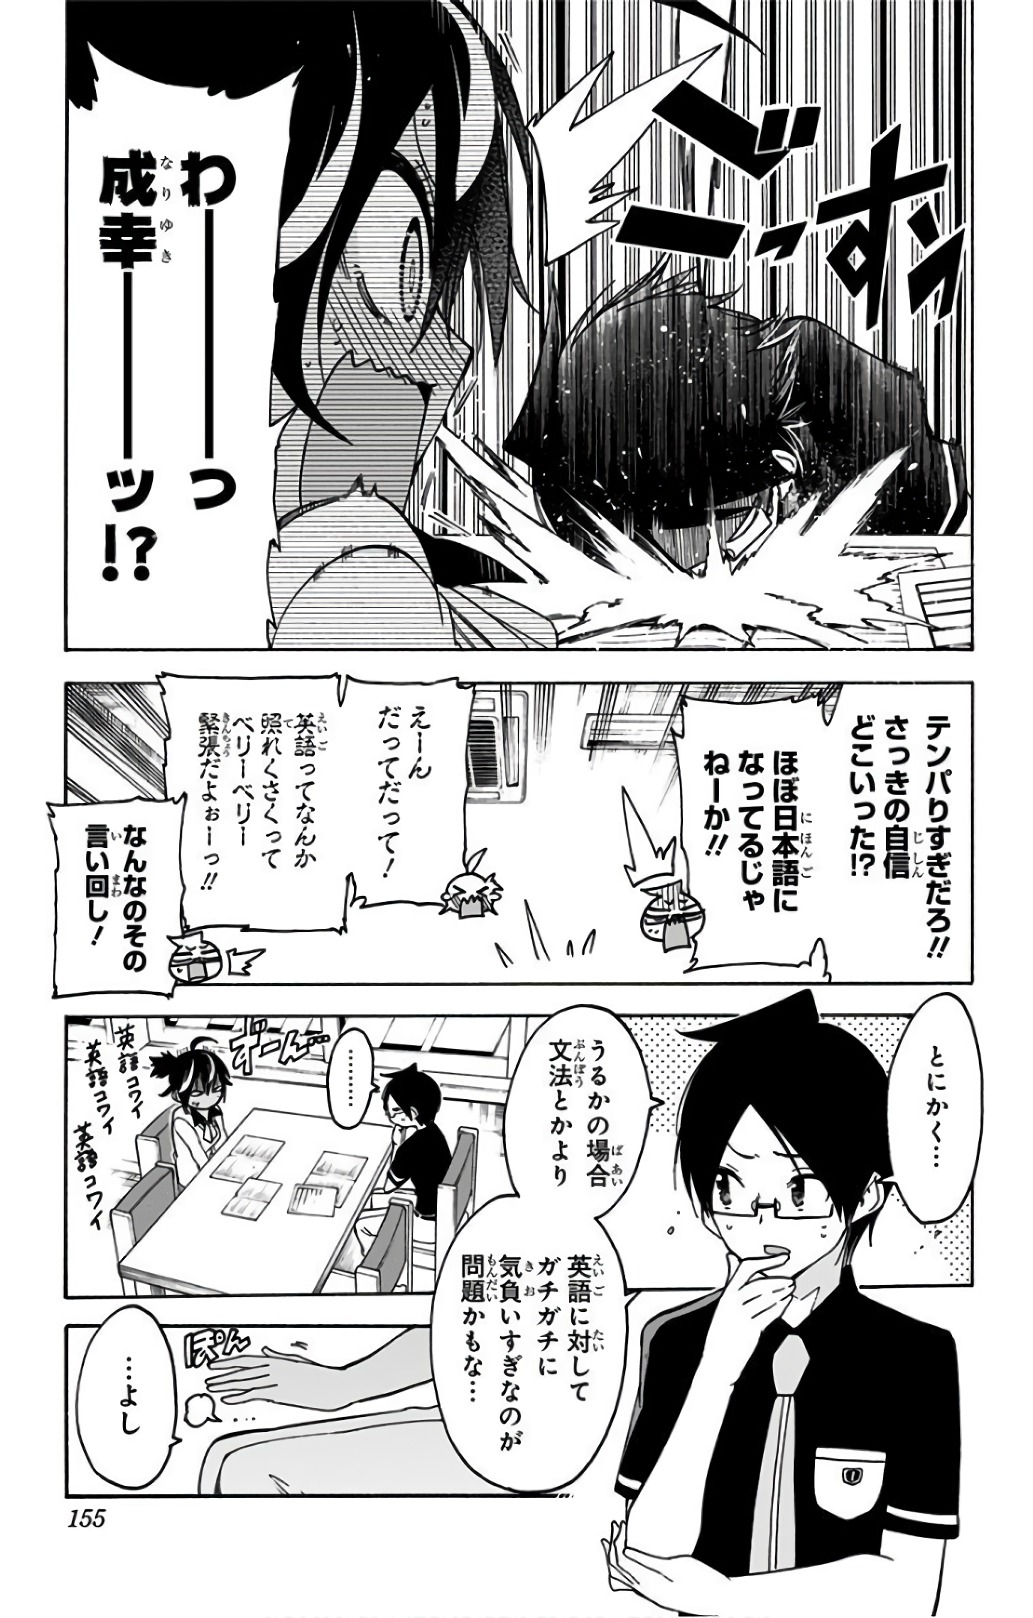 Bokutachi wa Benkyou ga Dekinai - Chapter 59 - Page 5